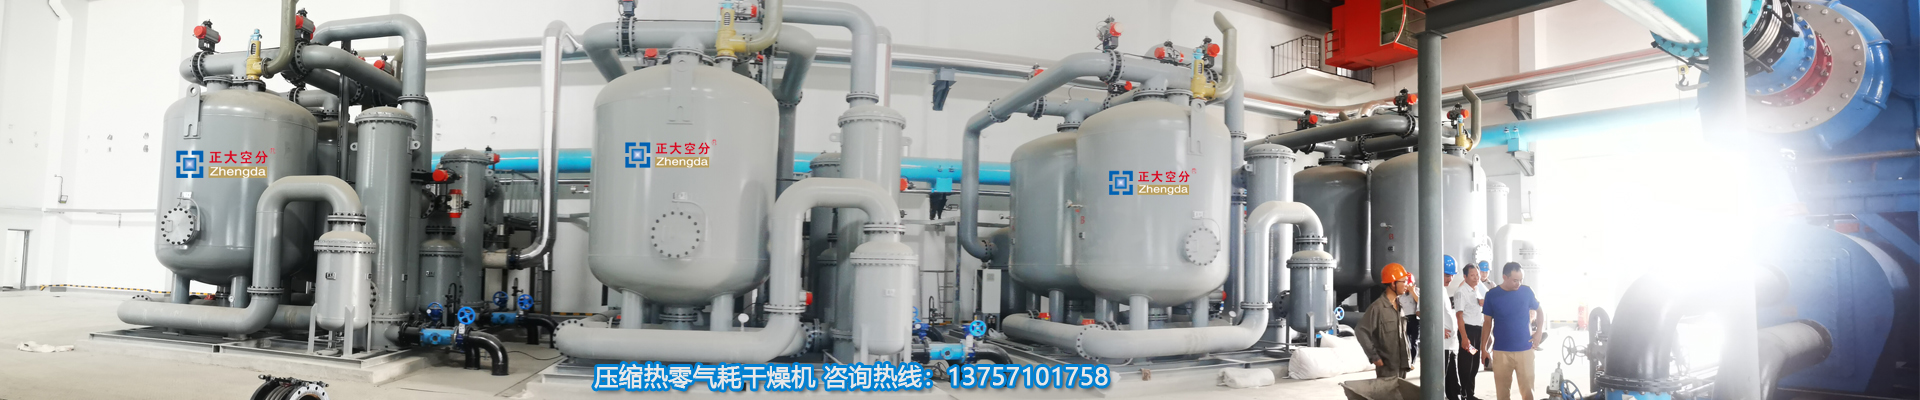 PSA制氧设备-零气耗干燥机、余热再生干燥机、余热式干燥器生产厂家、浙江正大空分设备有限公司